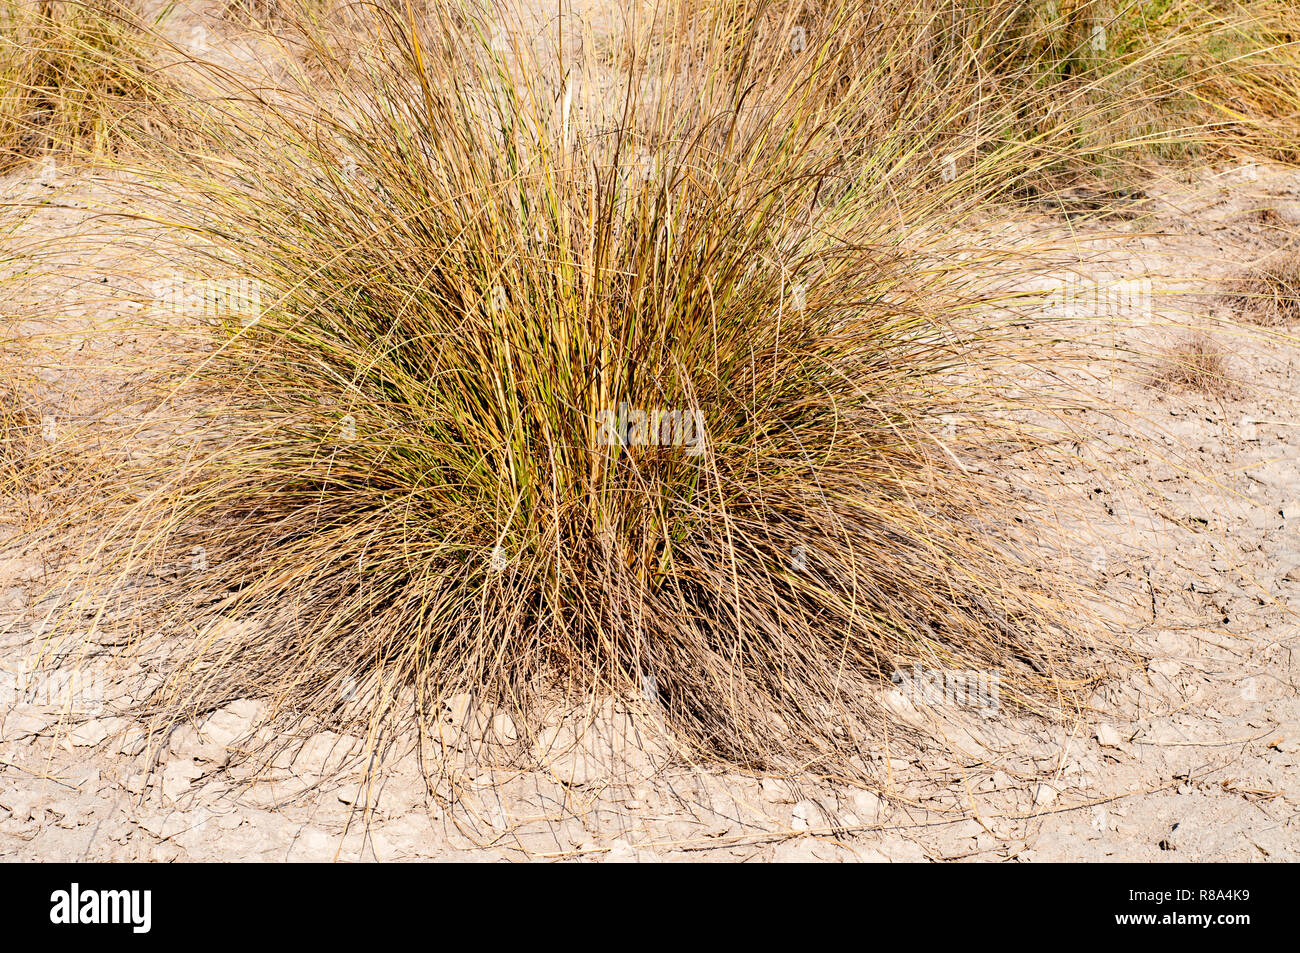 Marram grass in the Thar desert Stock Photo